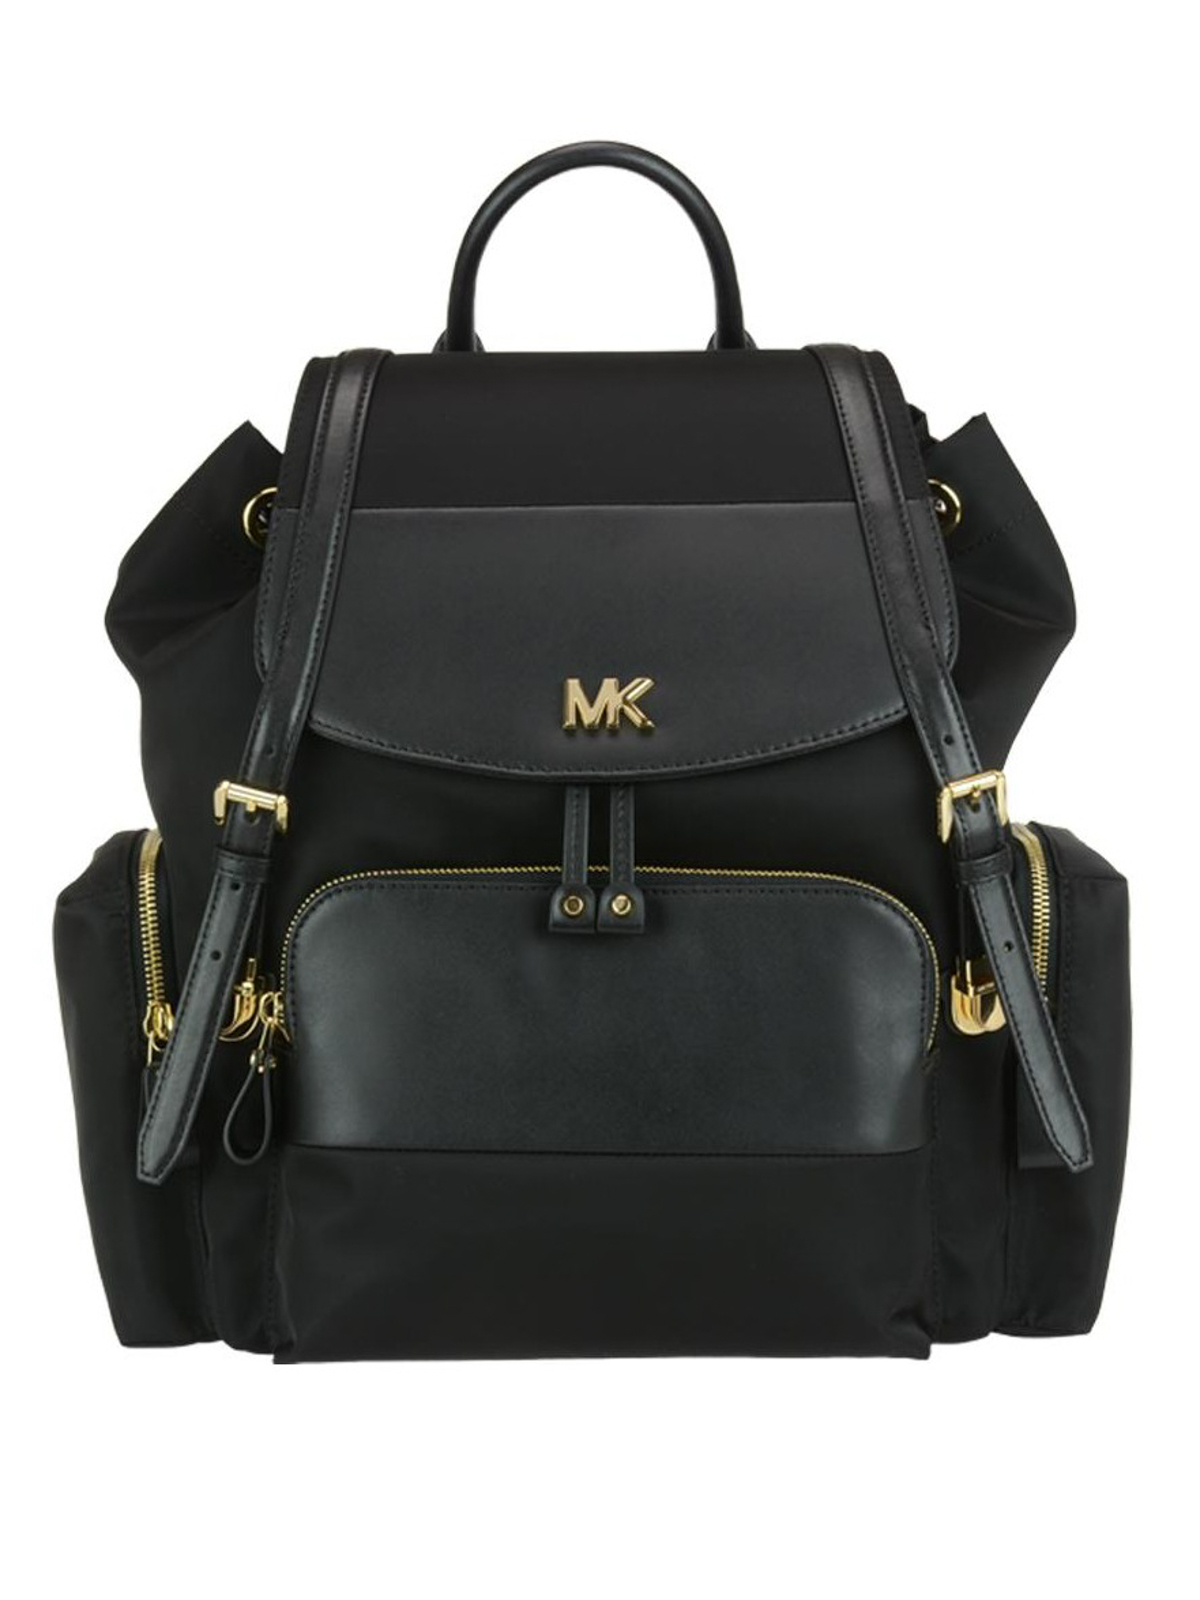 Backpacks Michael Kors - Mott L black nylon diaper backpack - 30S8GOXB3C001